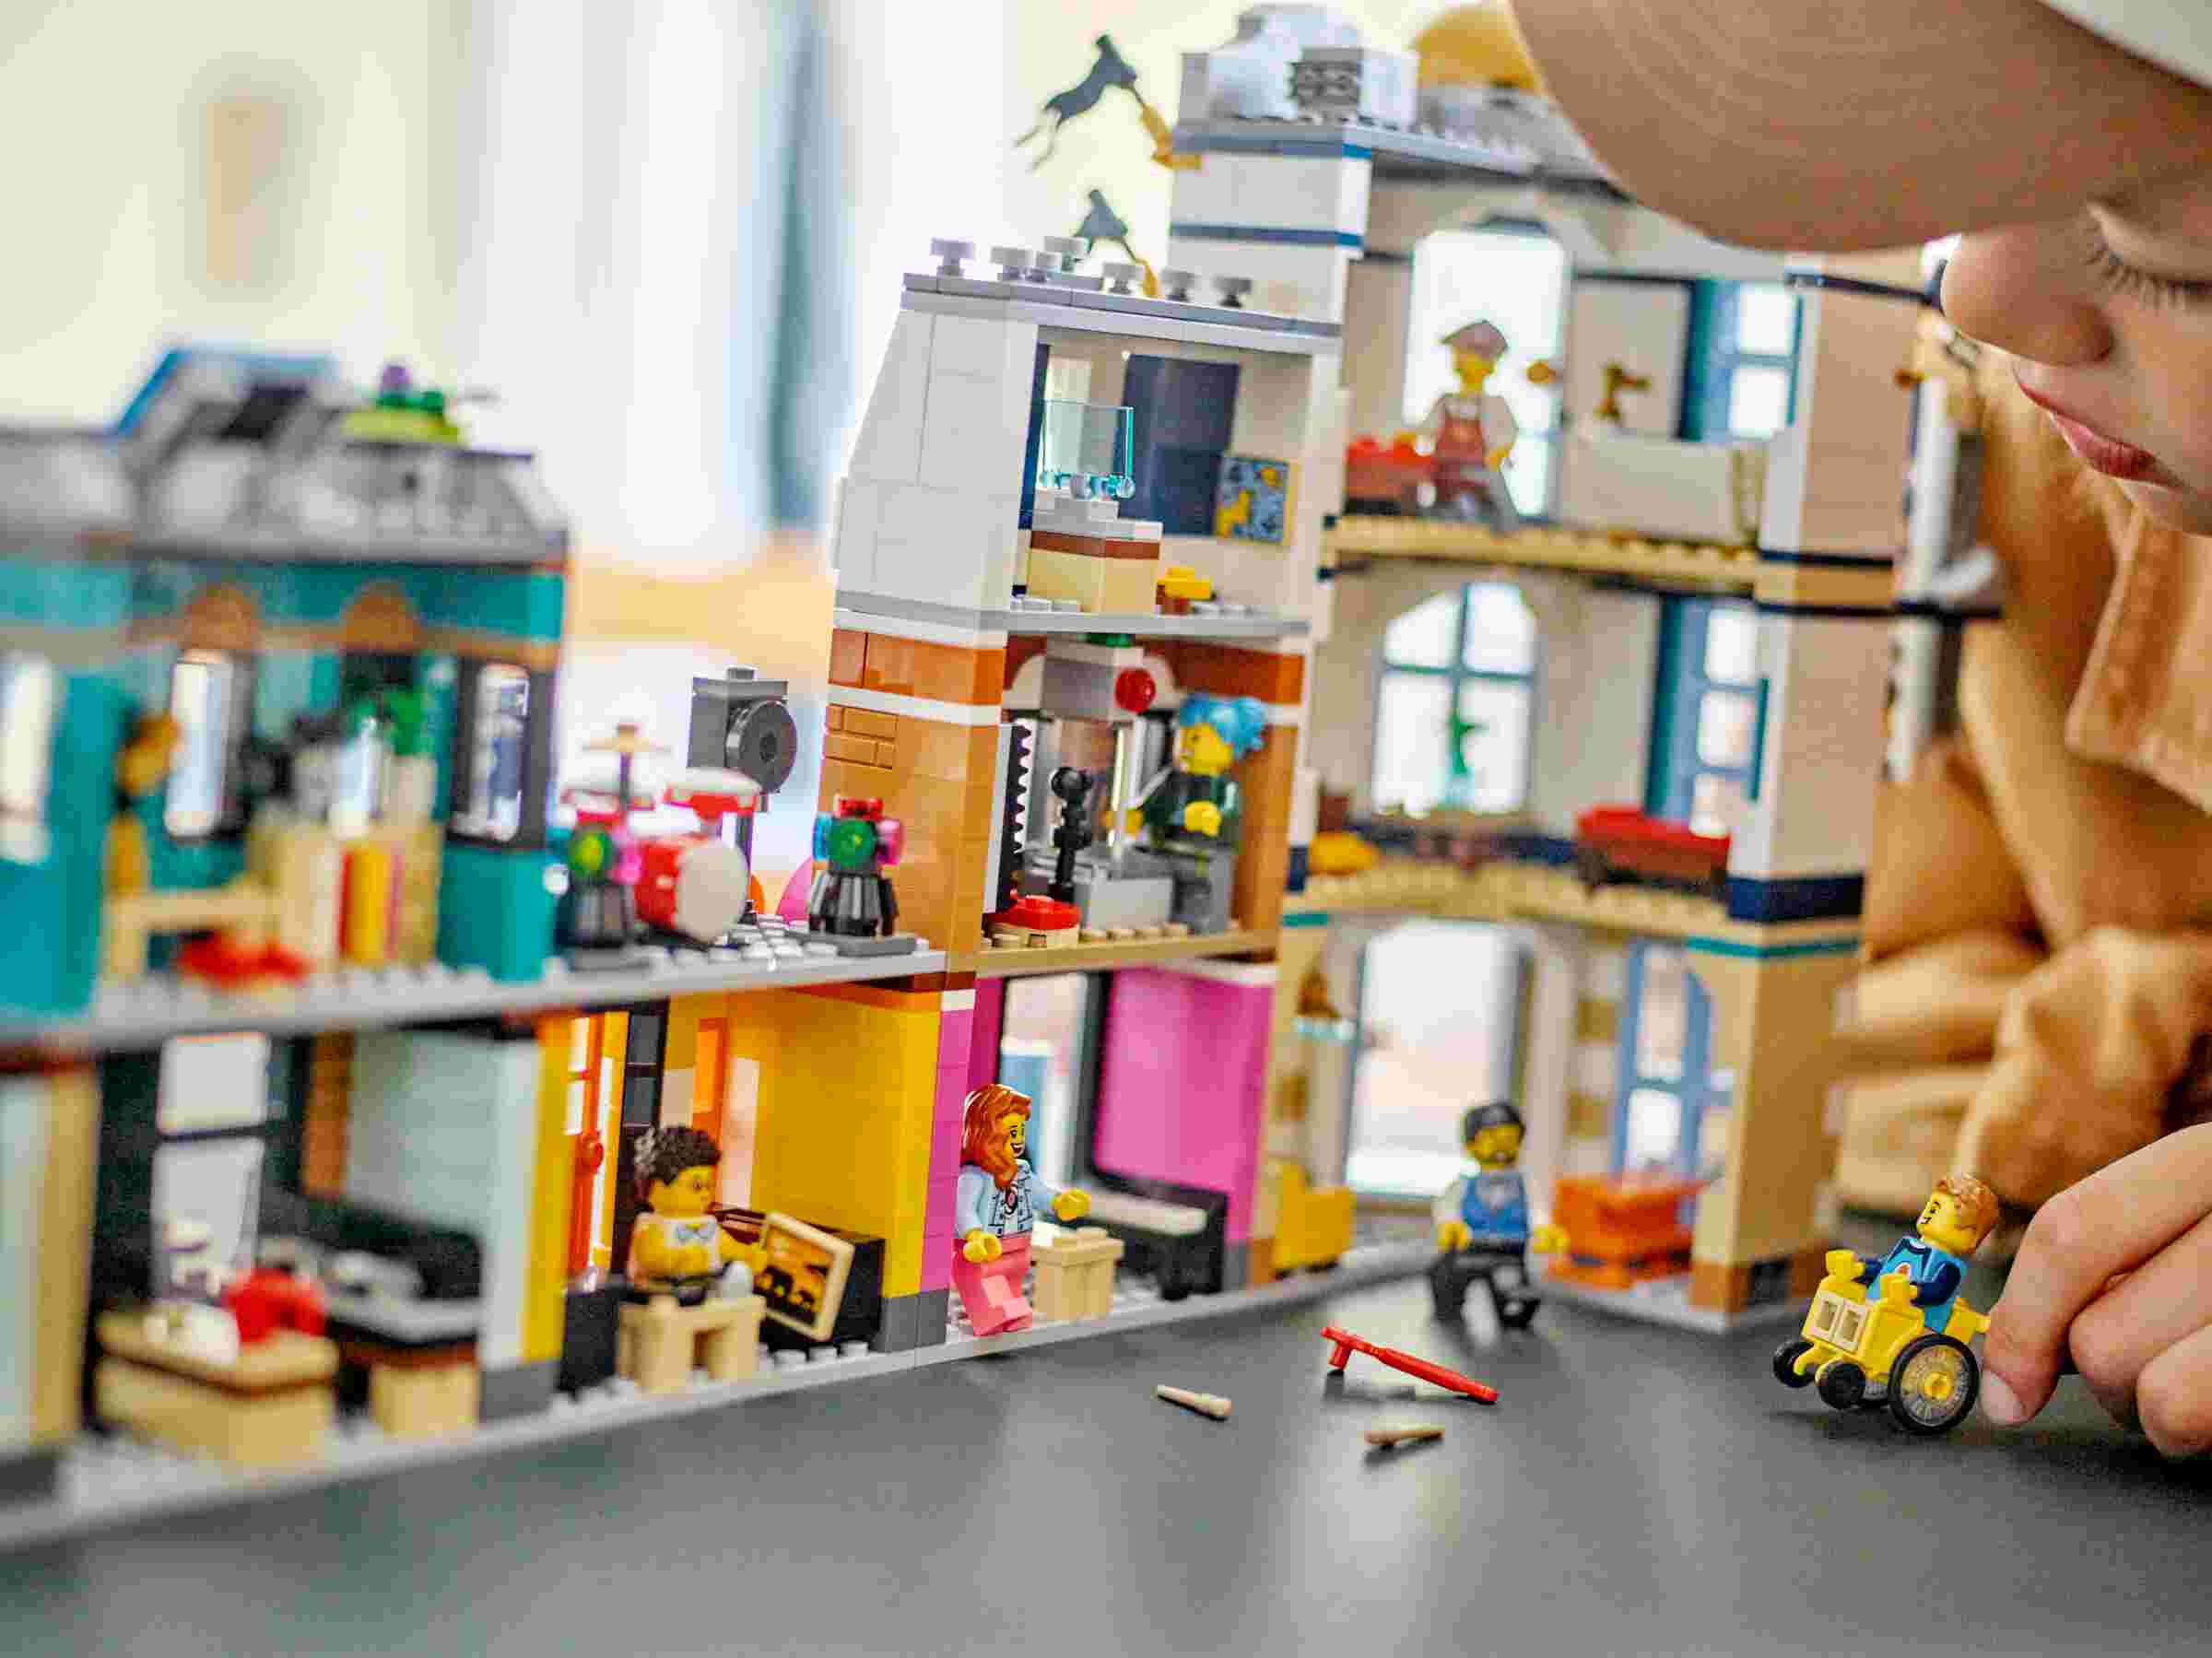 LEGO 31141 Creator 3-in-1 Hauptstraße, Art-déco-Hochhaus oder Einkaufsarkade